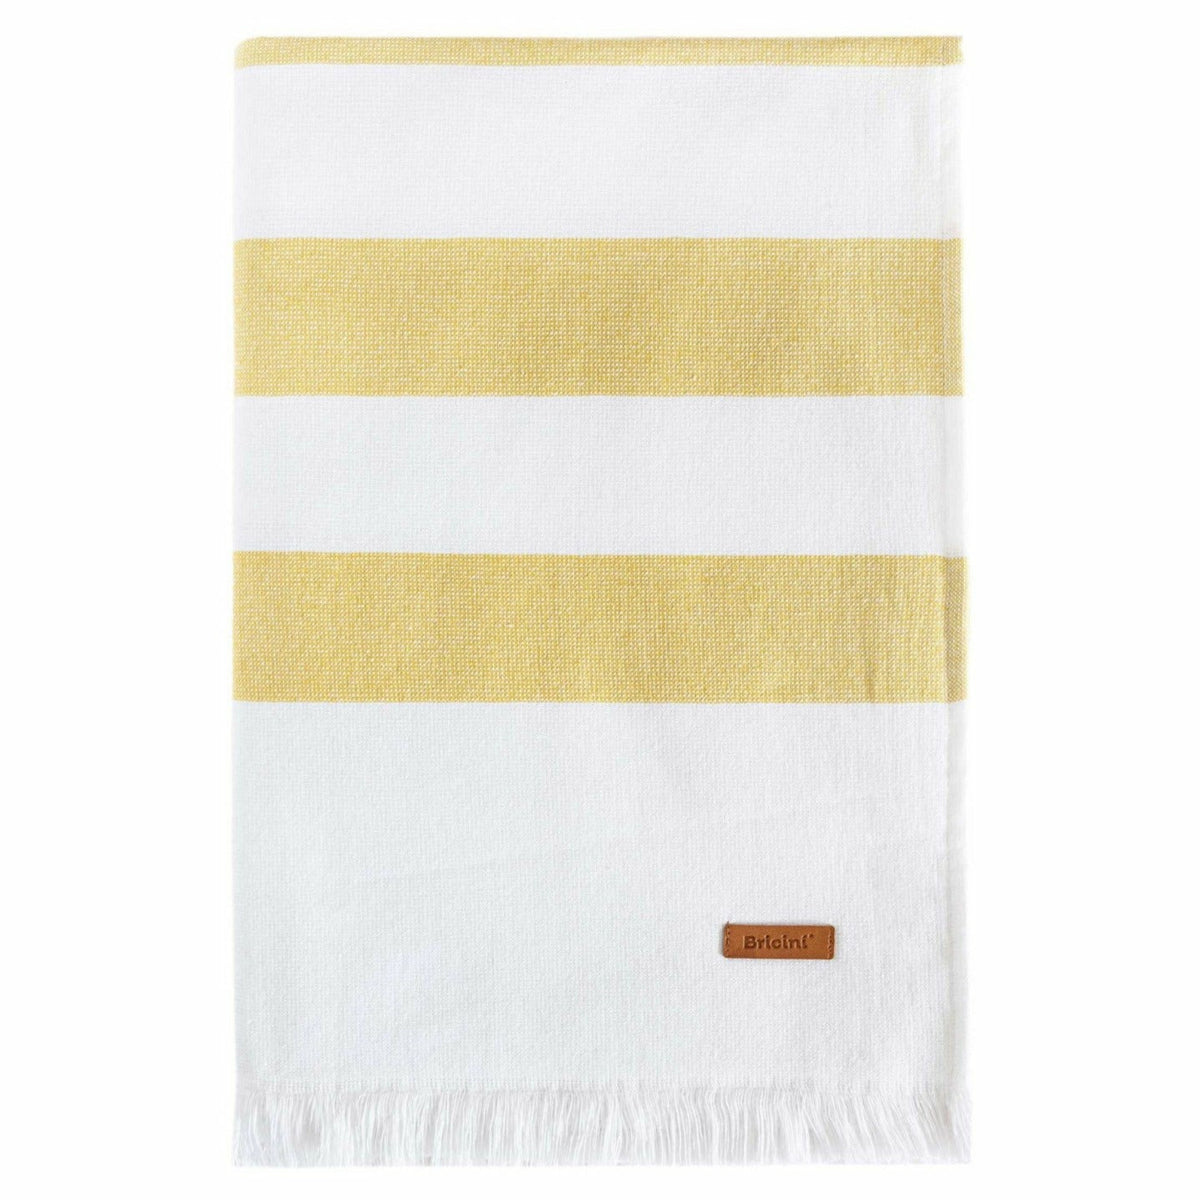 Bricini Costa Nova Beach Towels Silo Mustard Fine Linens